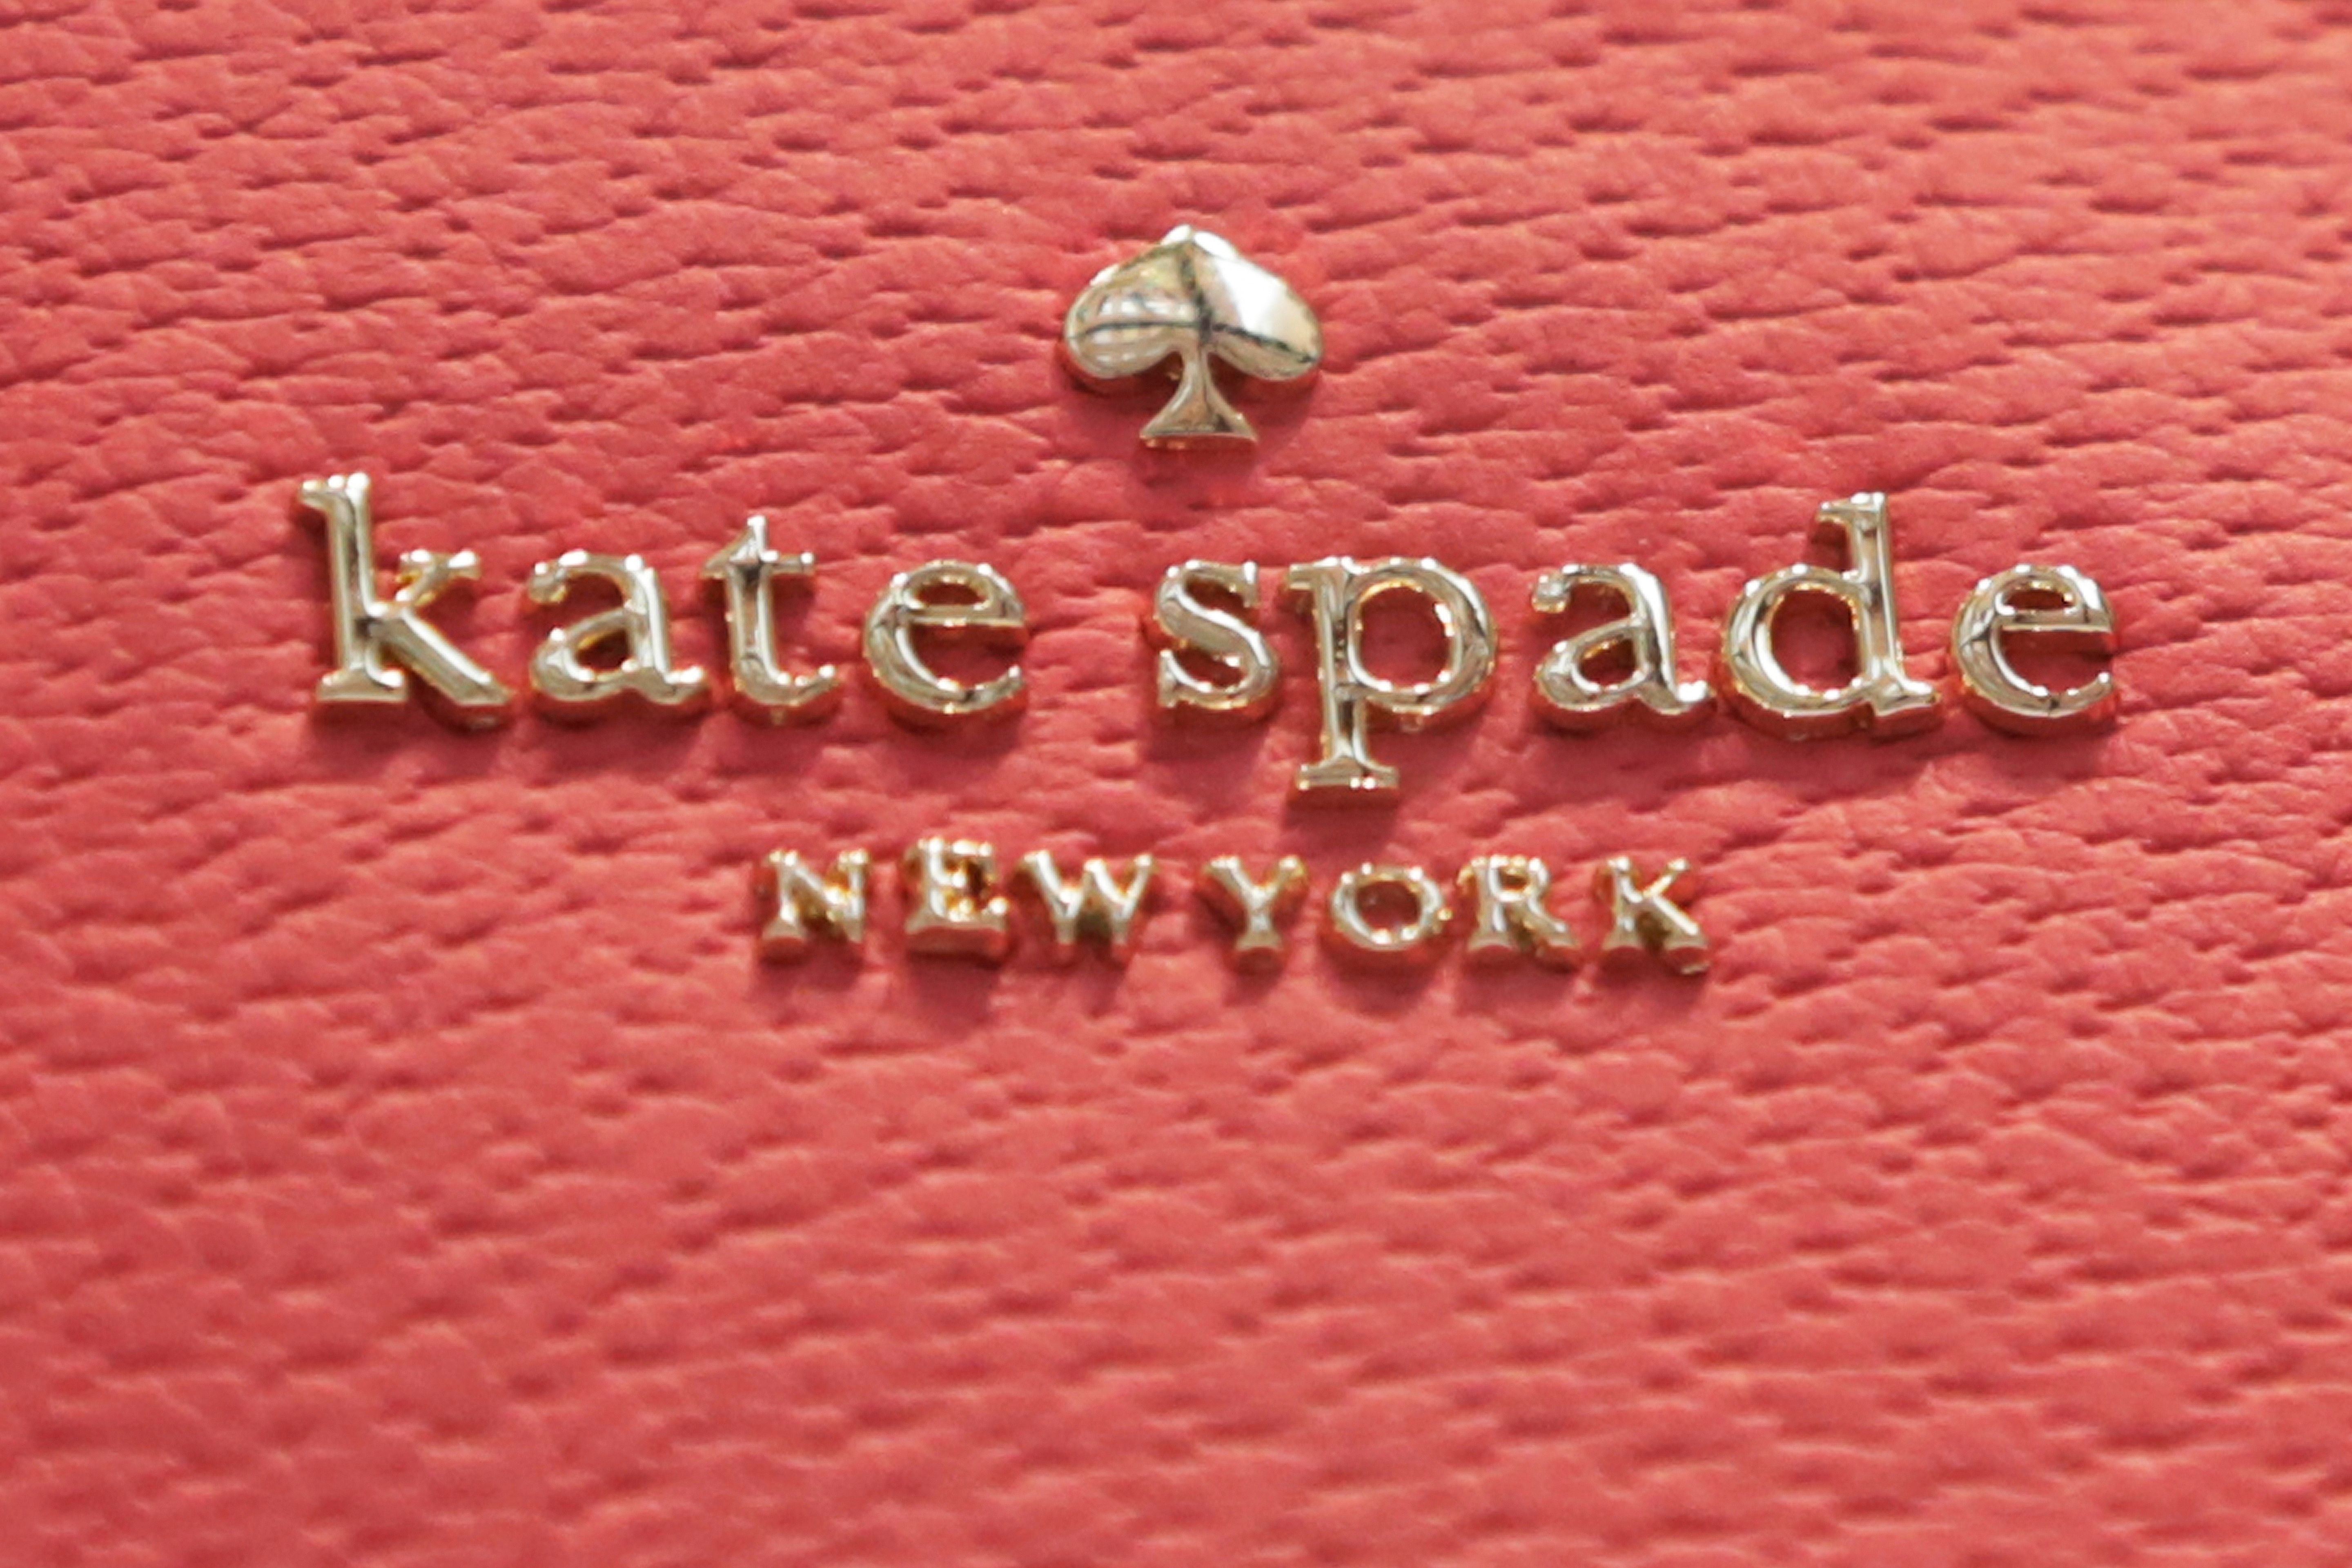 kate spade new york Bags & Handbags for Women for sale | eBay